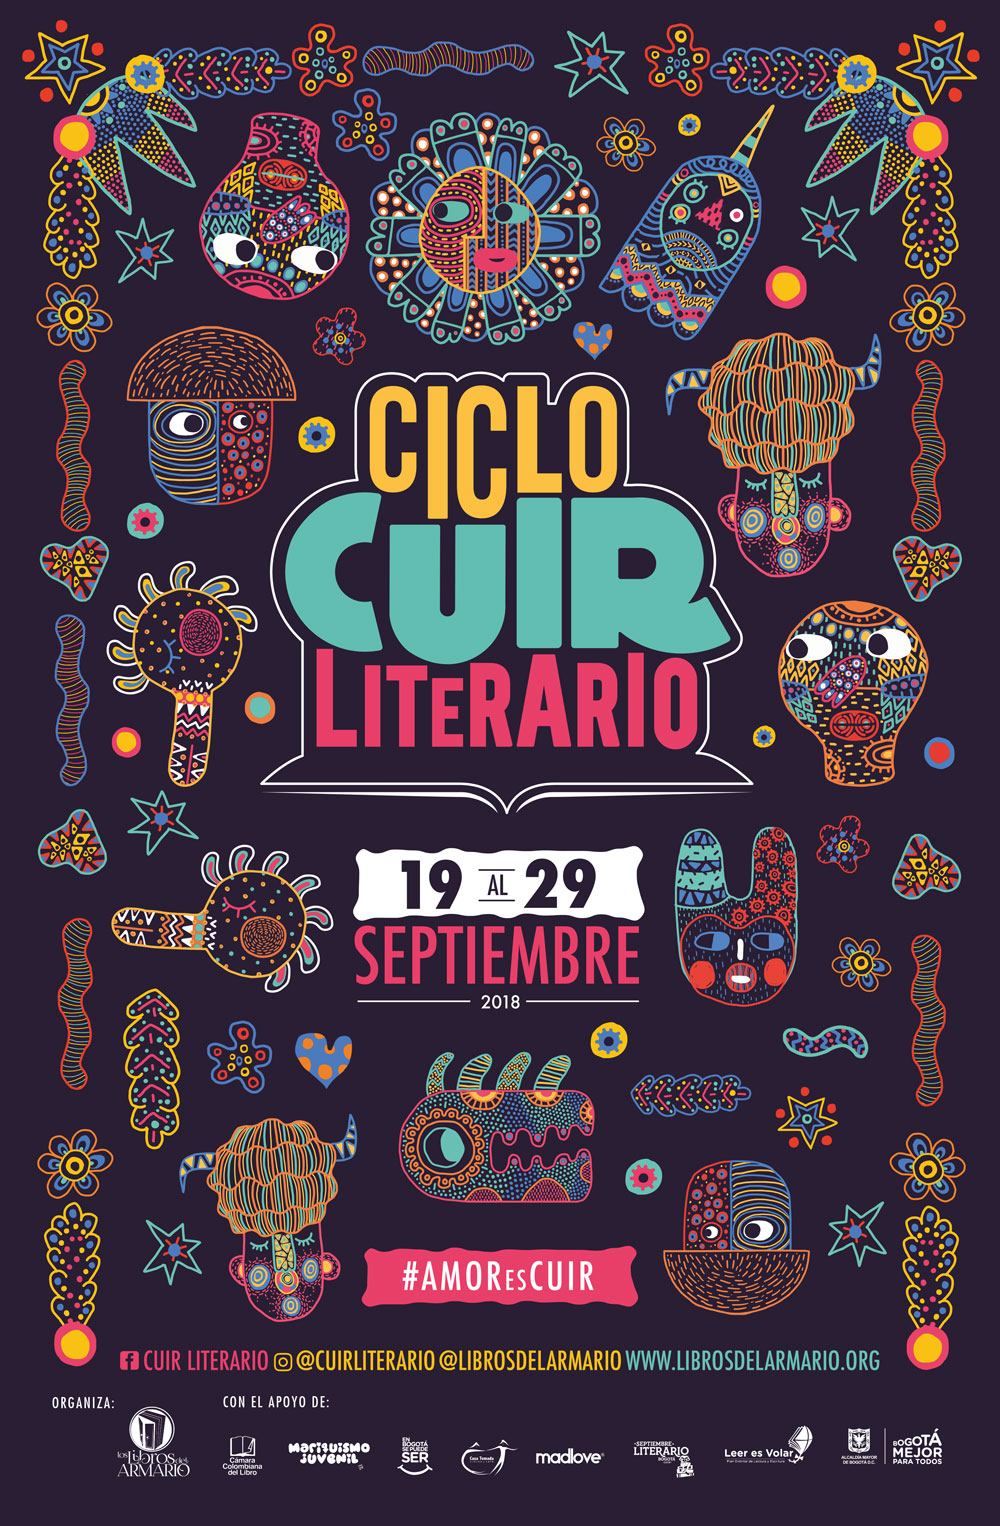 Ciclo Cuir Literario 2018 - Afiche oficial